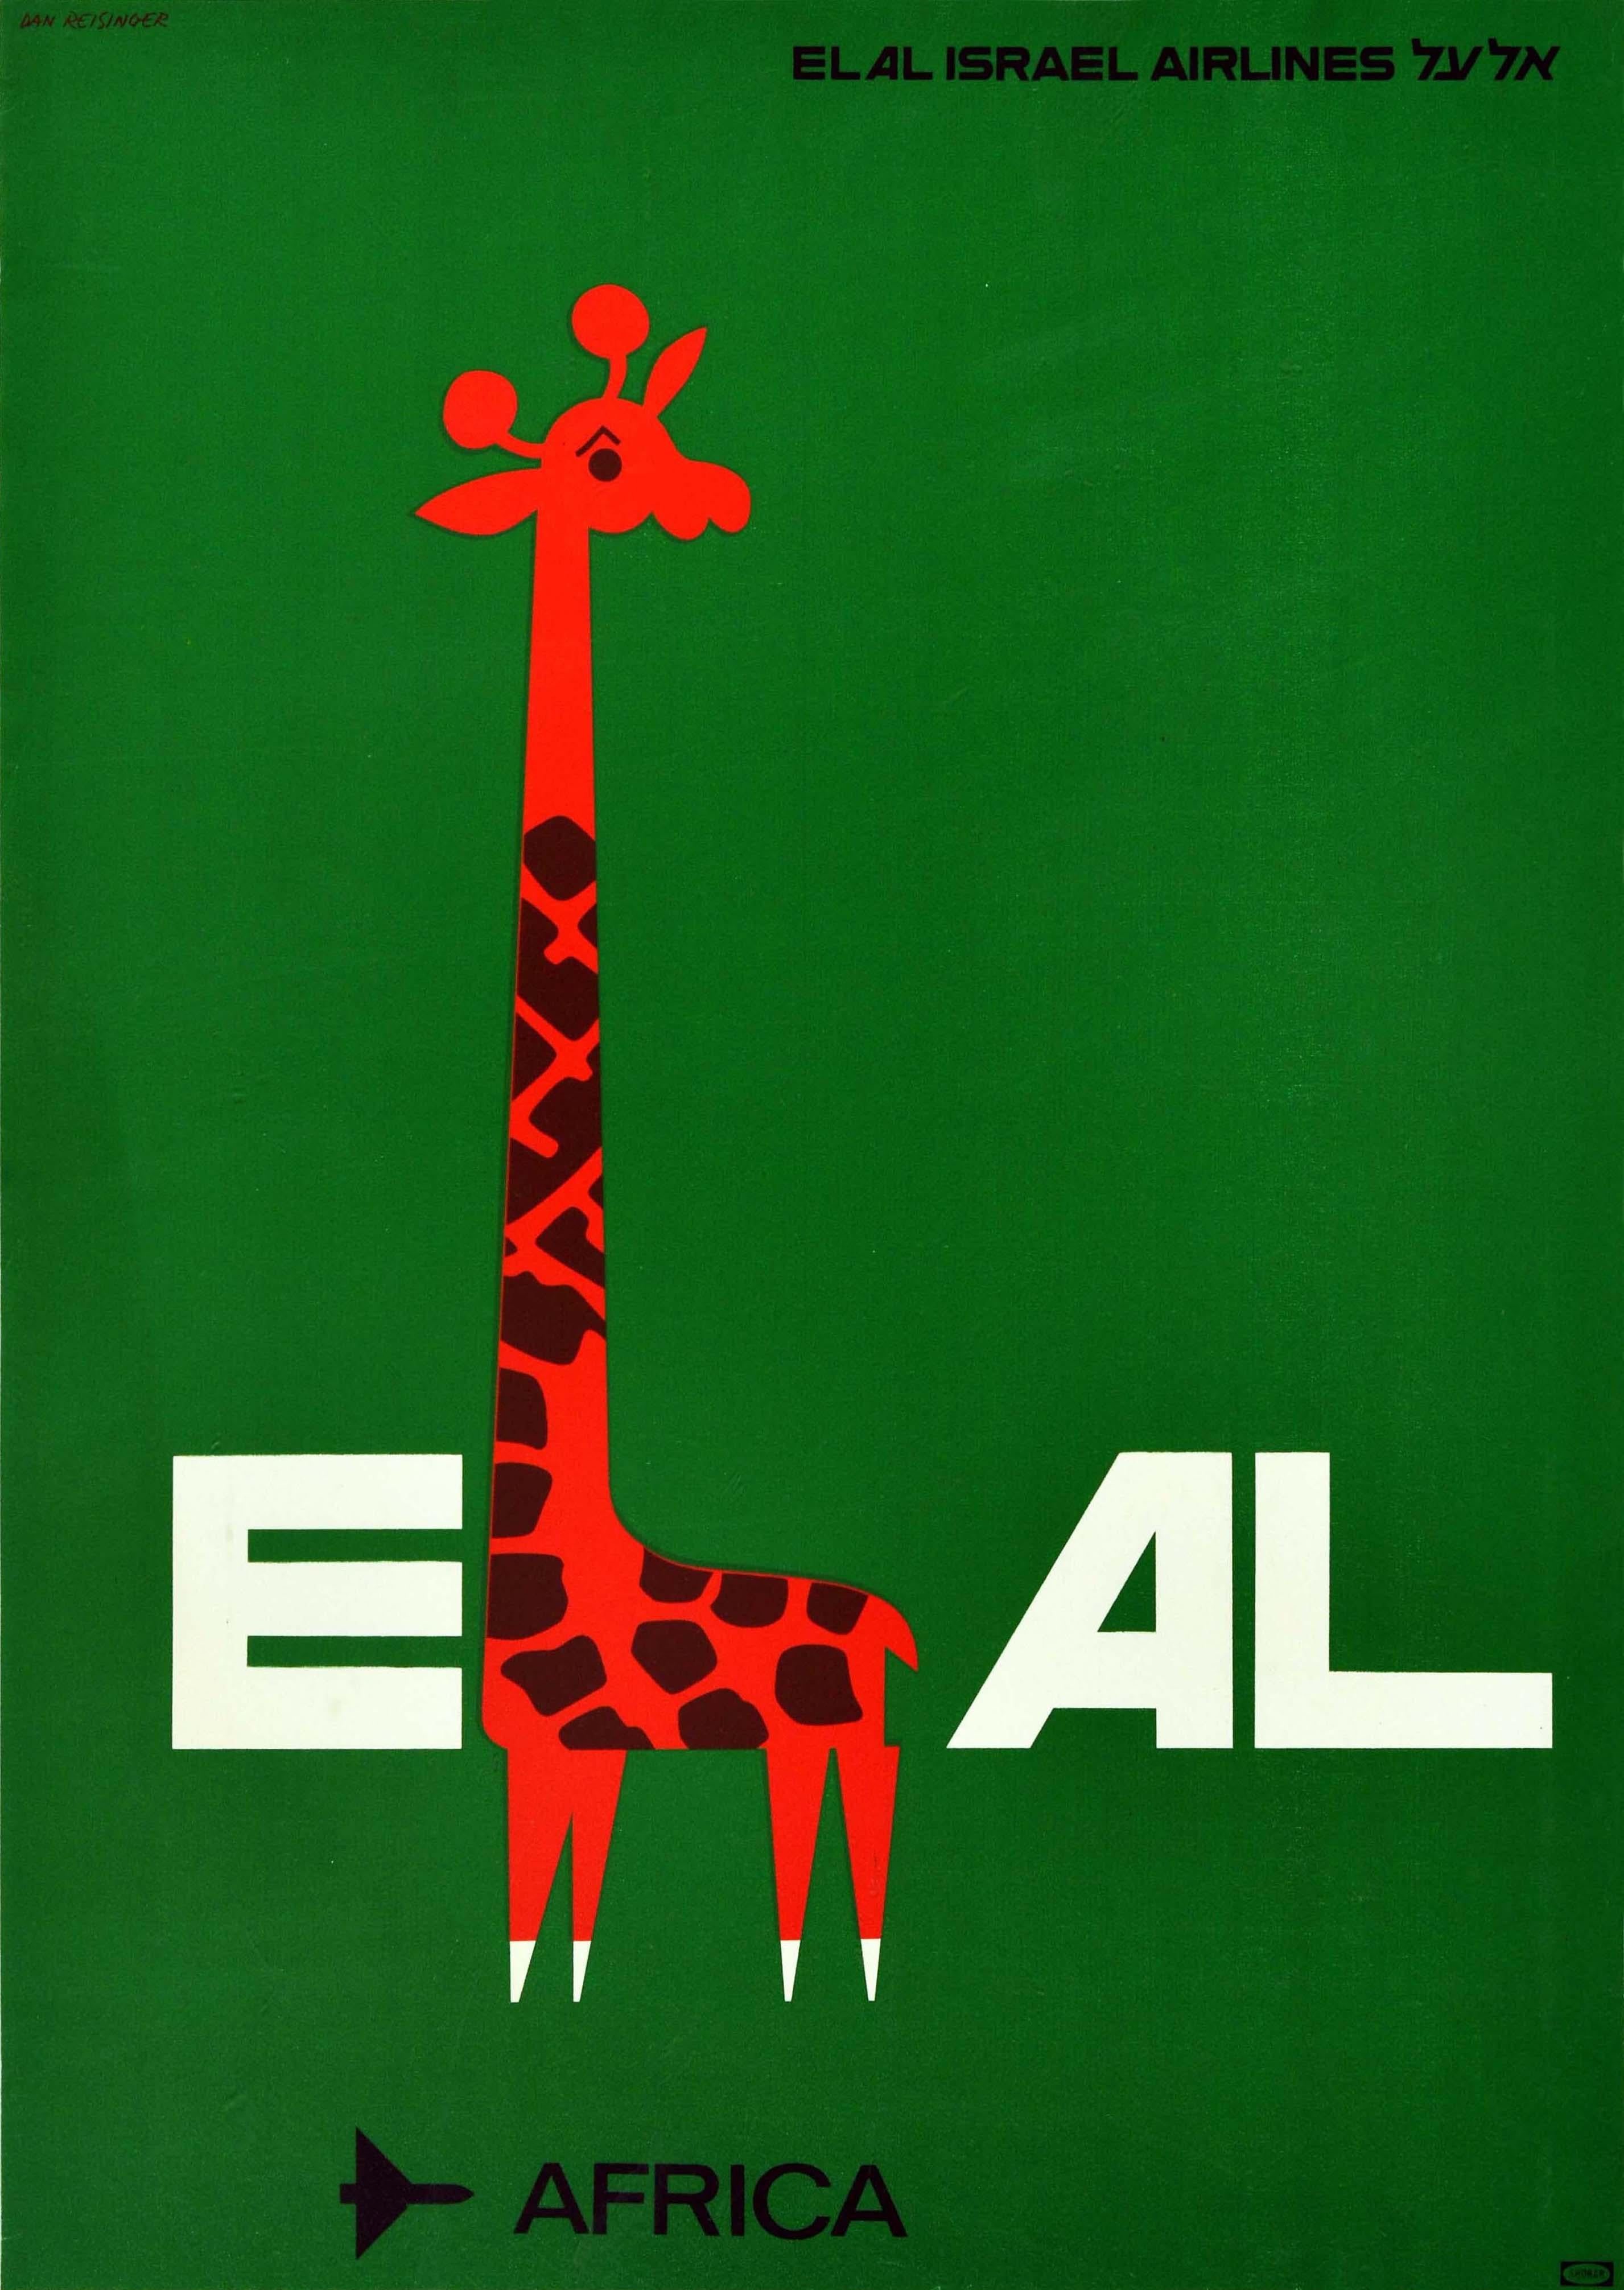 Dan Reisinger Print - Original Vintage Travel Poster El Al Israel Airlines Africa Safari Giraffe Plane